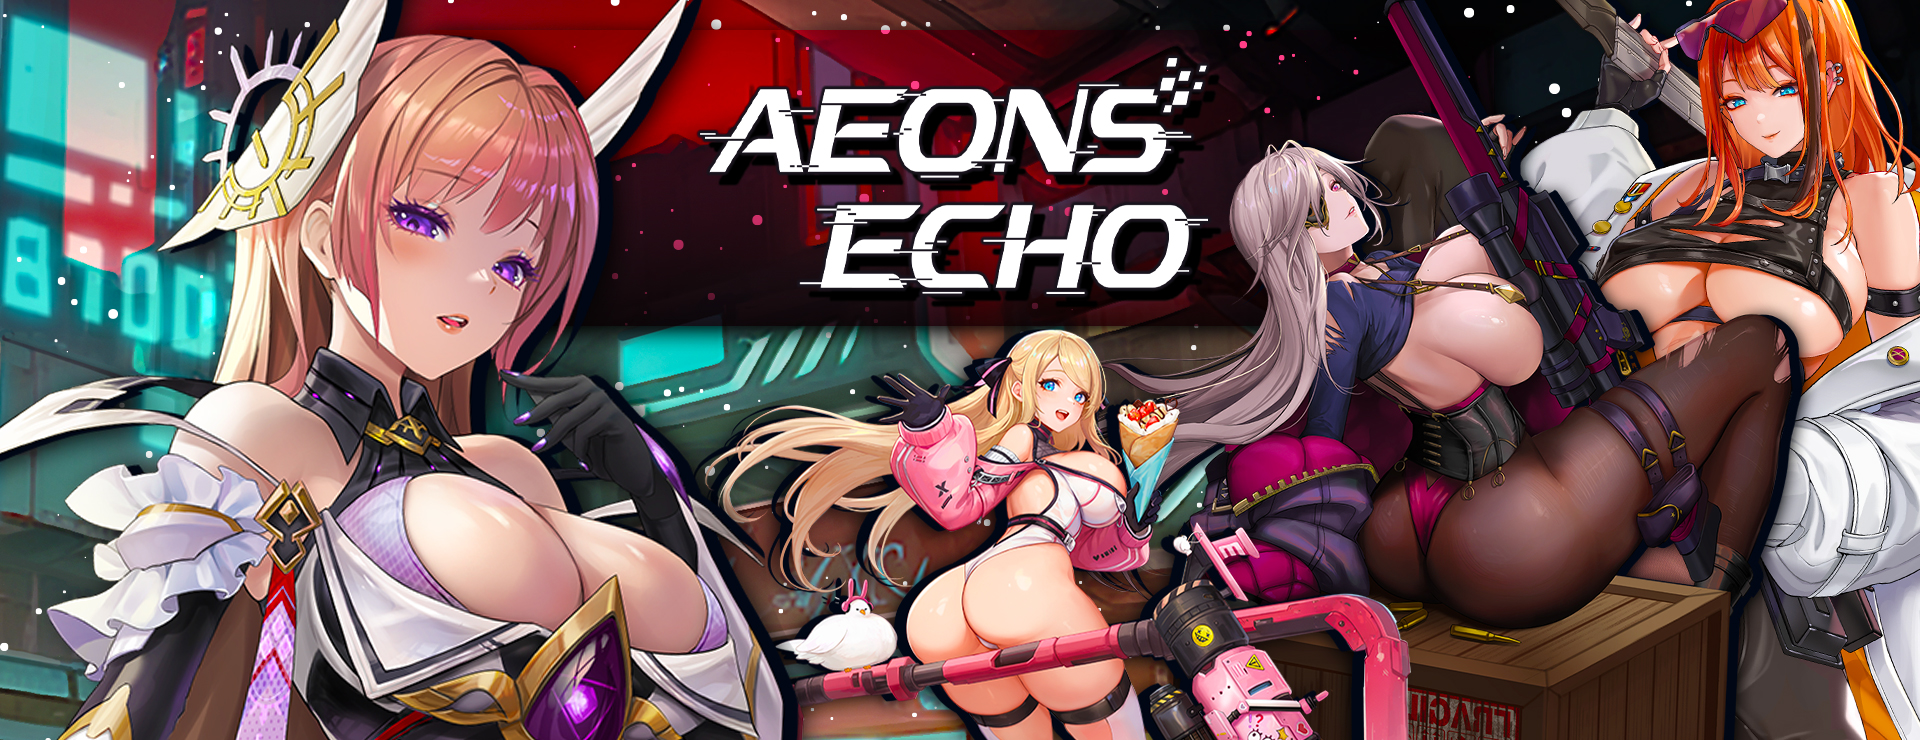 Aeons Echo - Zwanglos  Spiel